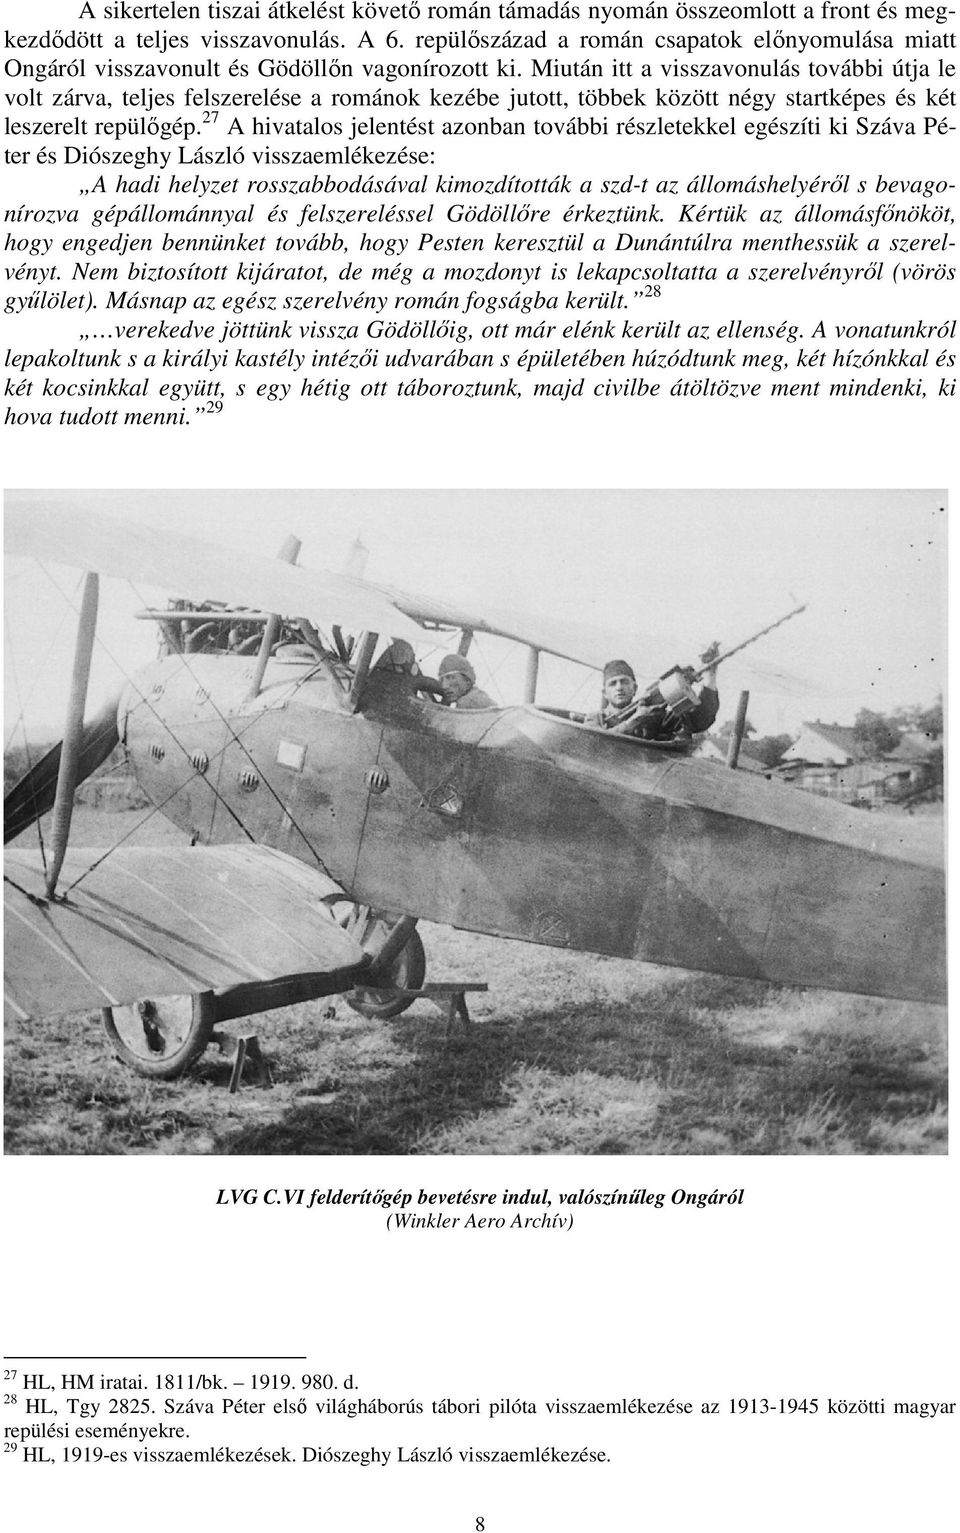 Miután itt a visszavonulás további útja le volt zárva, teljes felszerelése a románok kezébe jutott, többek között négy startképes és két leszerelt repülőgép.